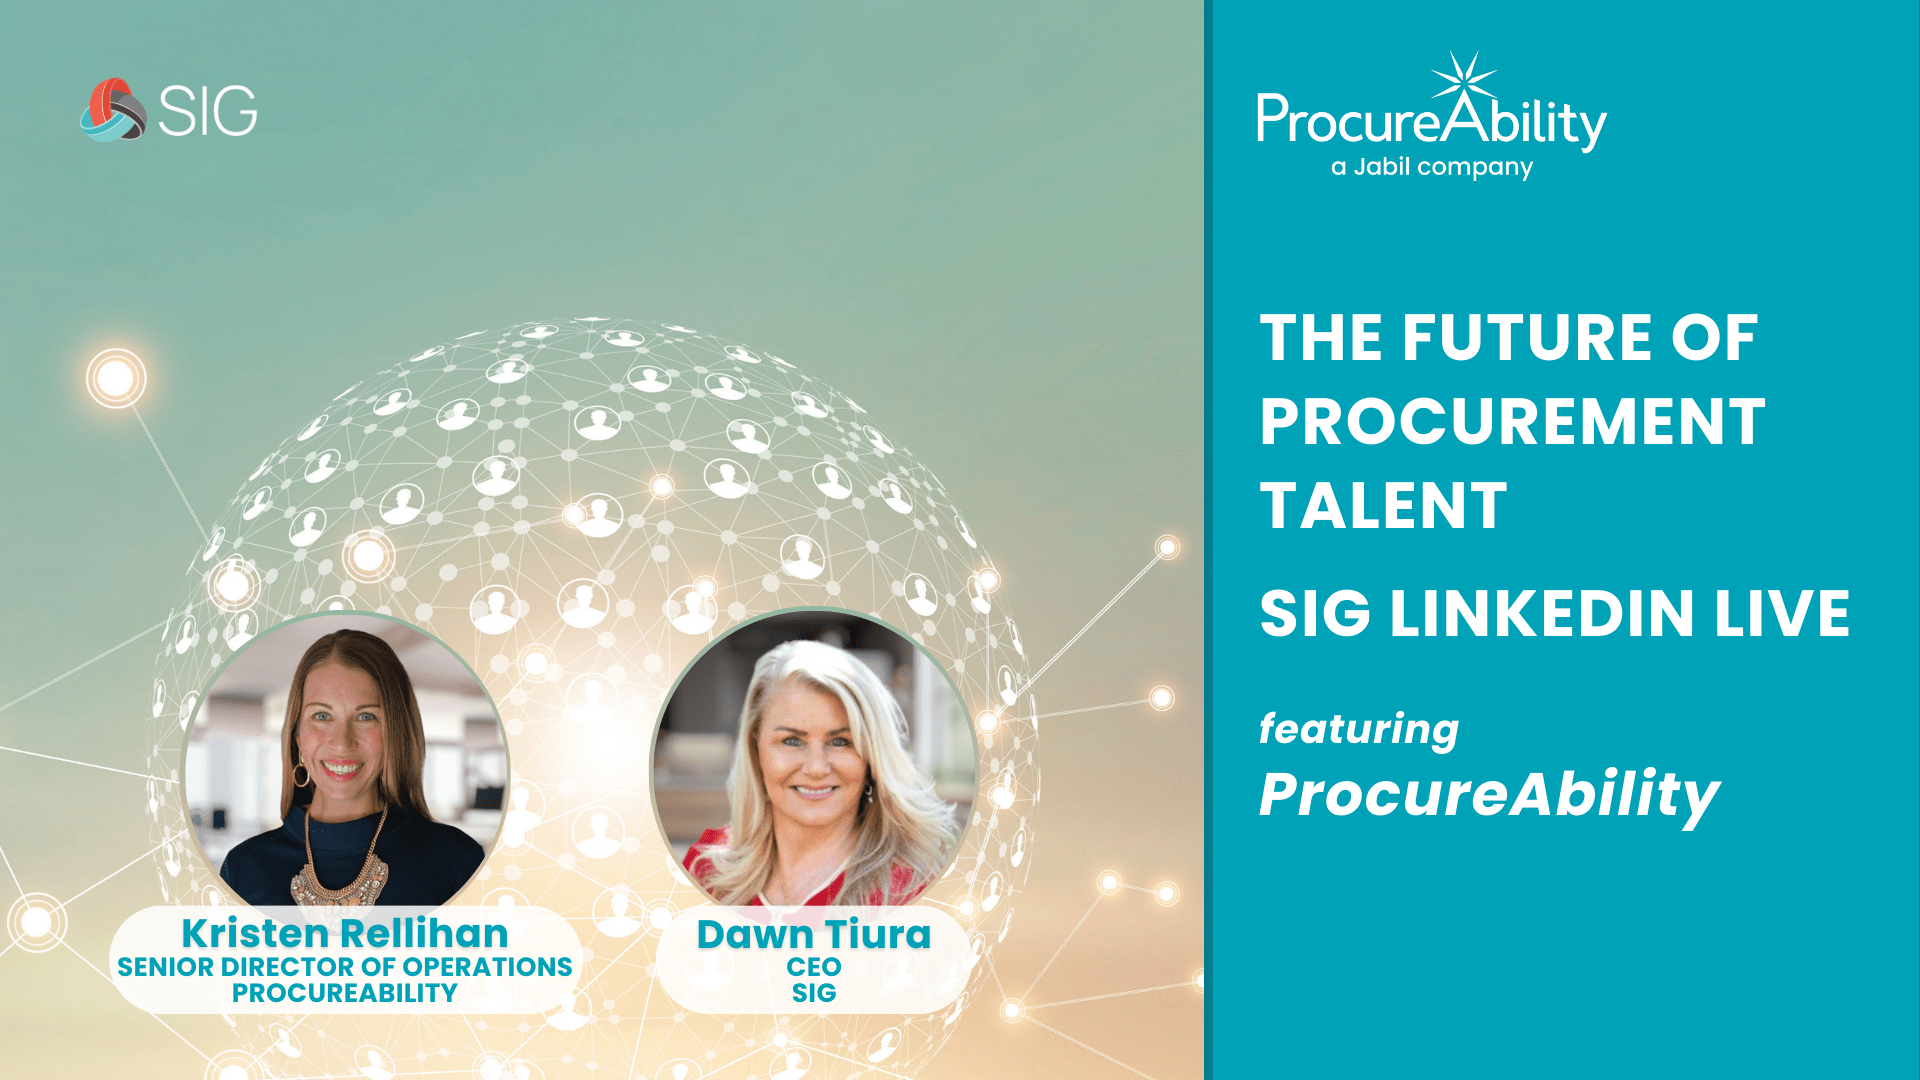 SIG LinkedIn Live with Kristen Rellihan, Senior Director at ProcureAbility